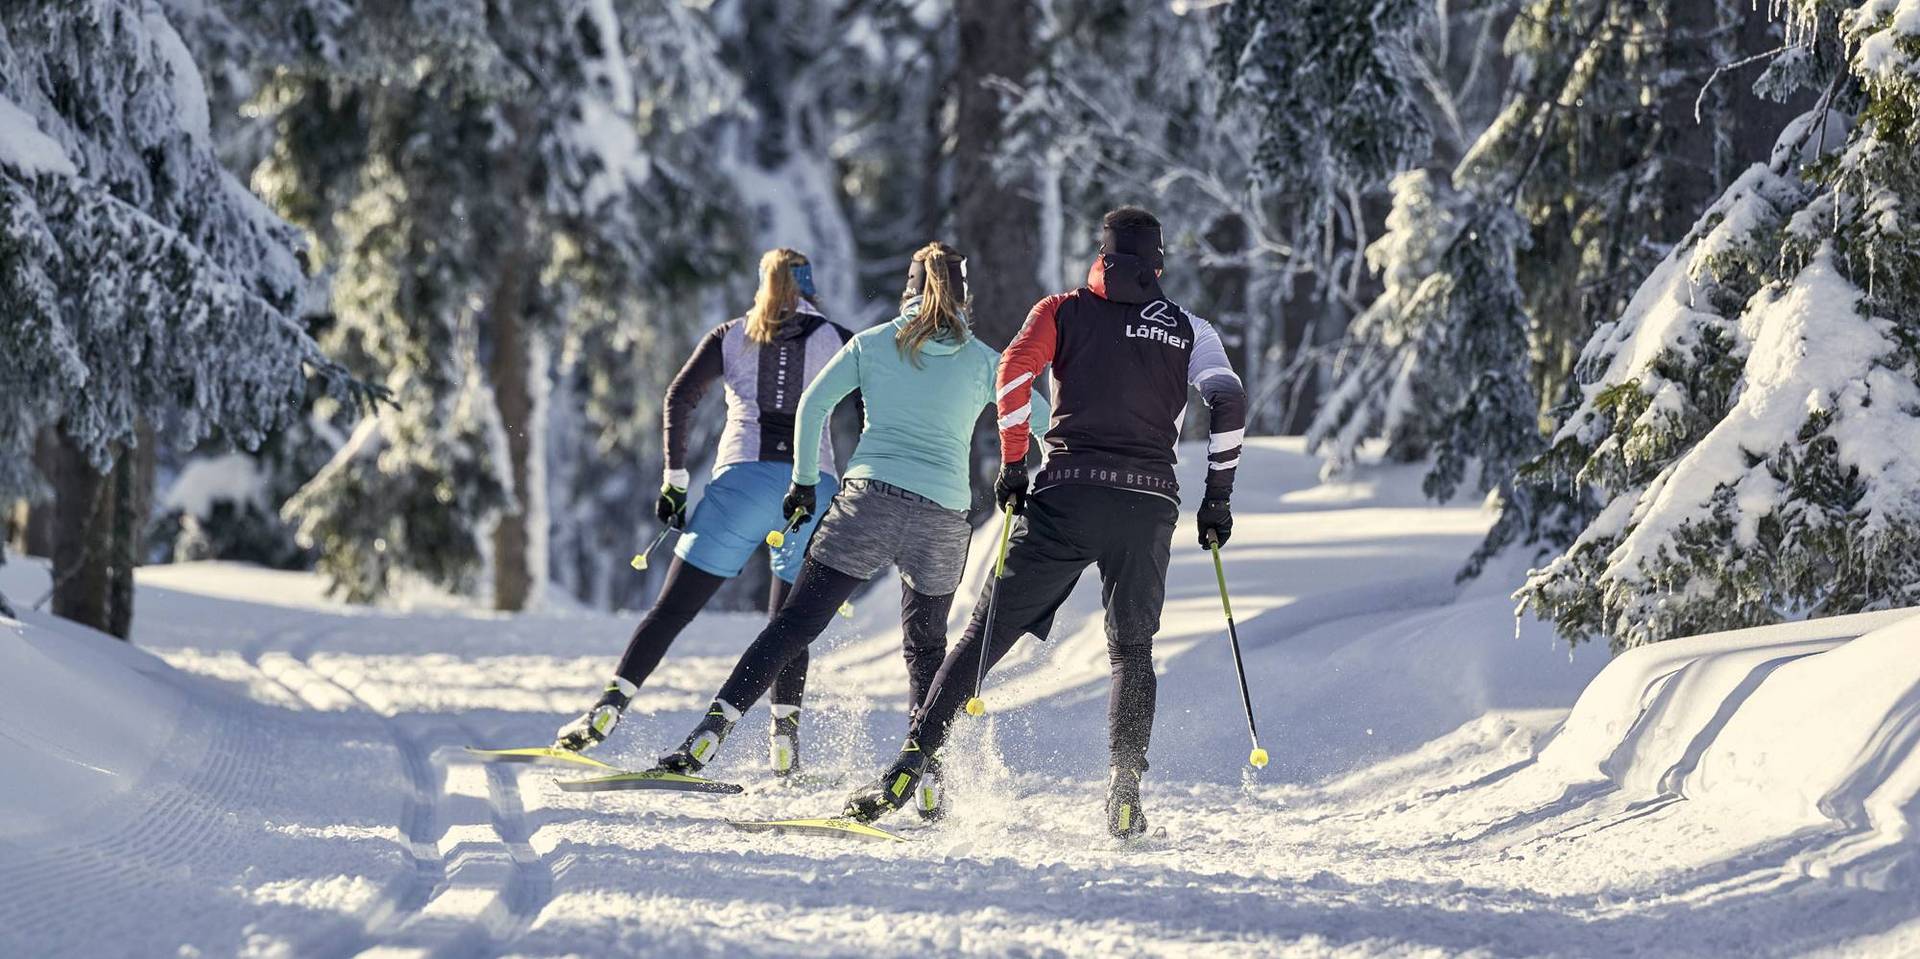 Eine Gruppe von drei Skating Langläufern, inmitten einer idyllischen Winterlandschaft im Wald.